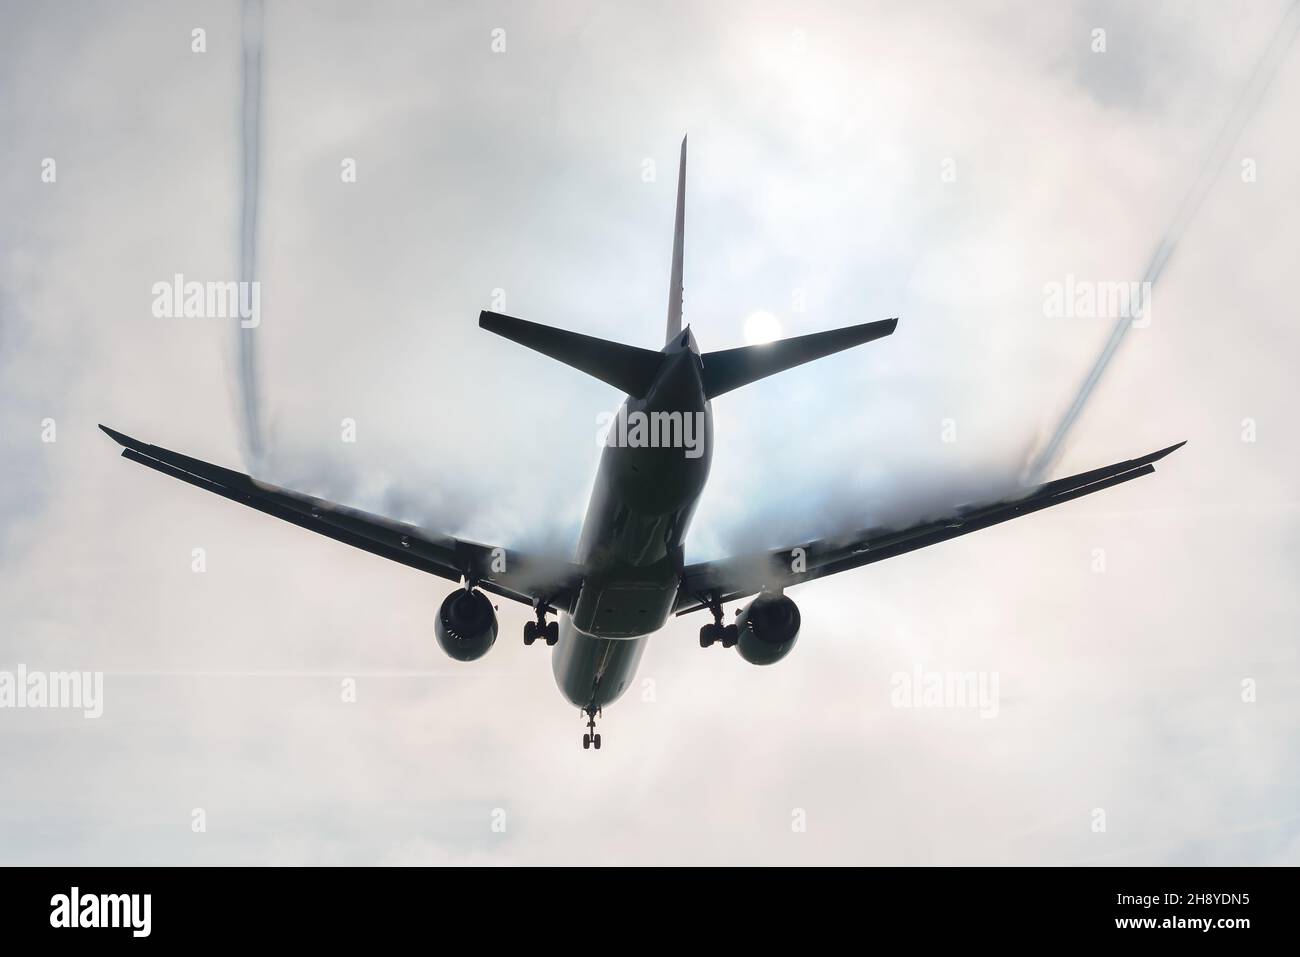 Velivolo in nebbia fitta con condensa alare e vortice aereo. Aerodinamica dell'aviazione mostrata in aereo con sopra i vertici dell'ala che si condensano. Foto Stock